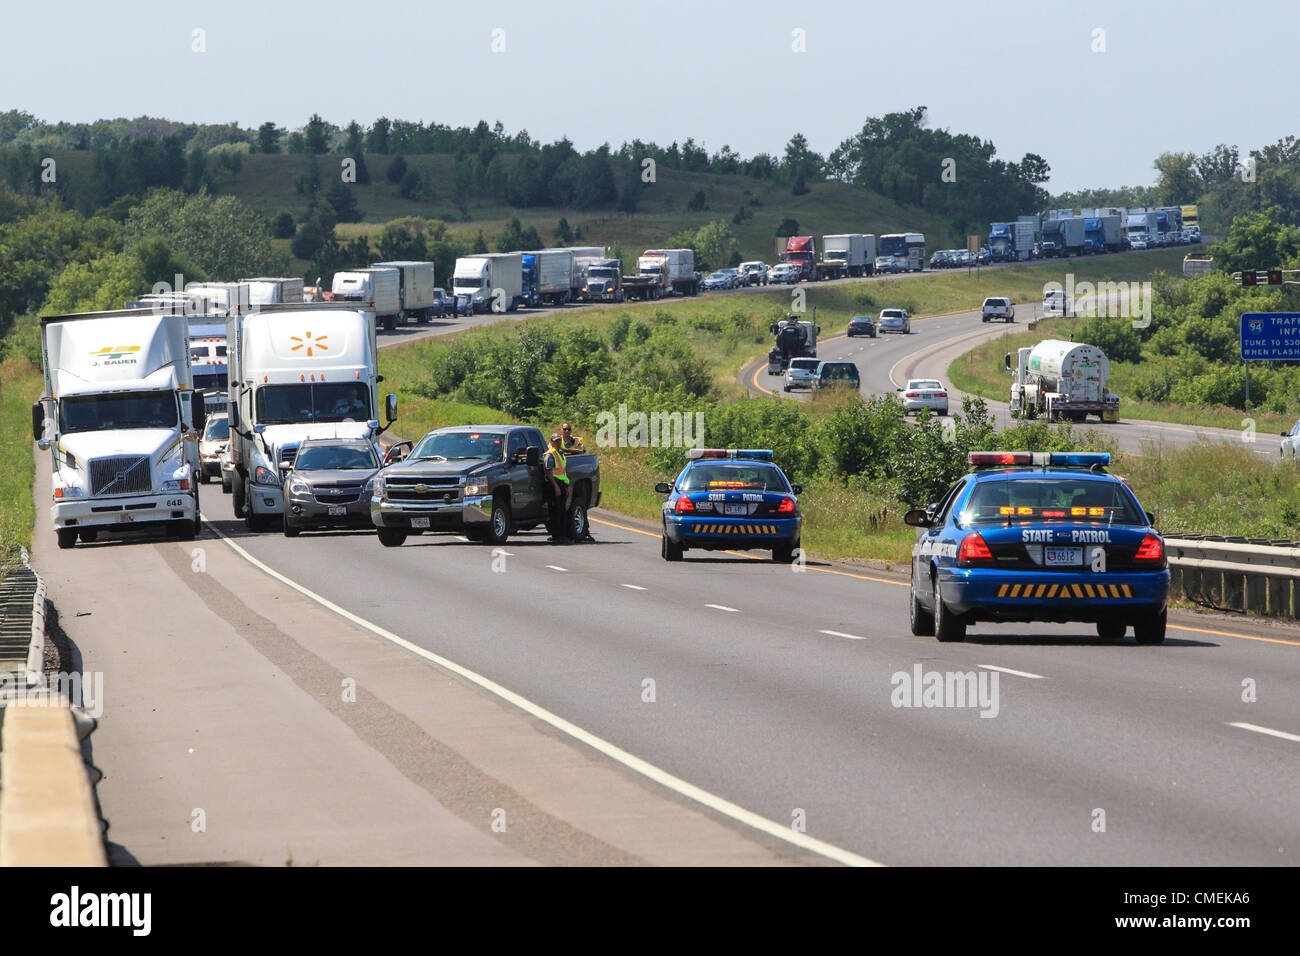 Montag, 30. Juli 2012--Verkehr sichert auf Interstate 94 nach hinten ein Flachbett Auflieger Meilenmarkierung 6 in Hudson, Wisconsin, USA ein Sport Utility Vehicle prallte. Mindestens eine Person starb bei dem Unfall. Stockfoto